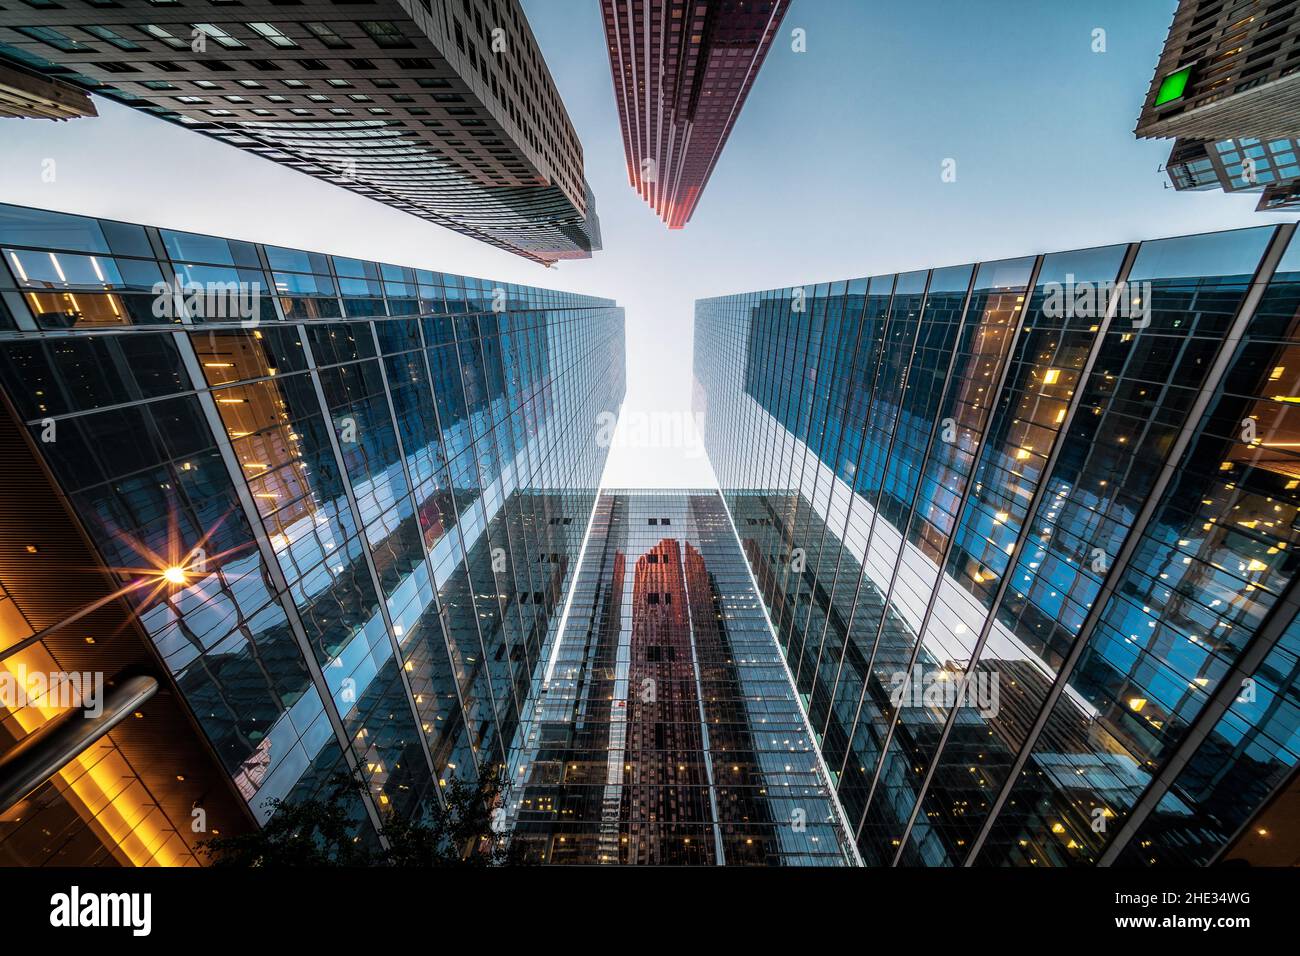 Business and Finance concept, en regardant l'architecture des immeubles de bureaux en hauteur au coucher du soleil dans le quartier financier d'une métropole moderne. Banque D'Images